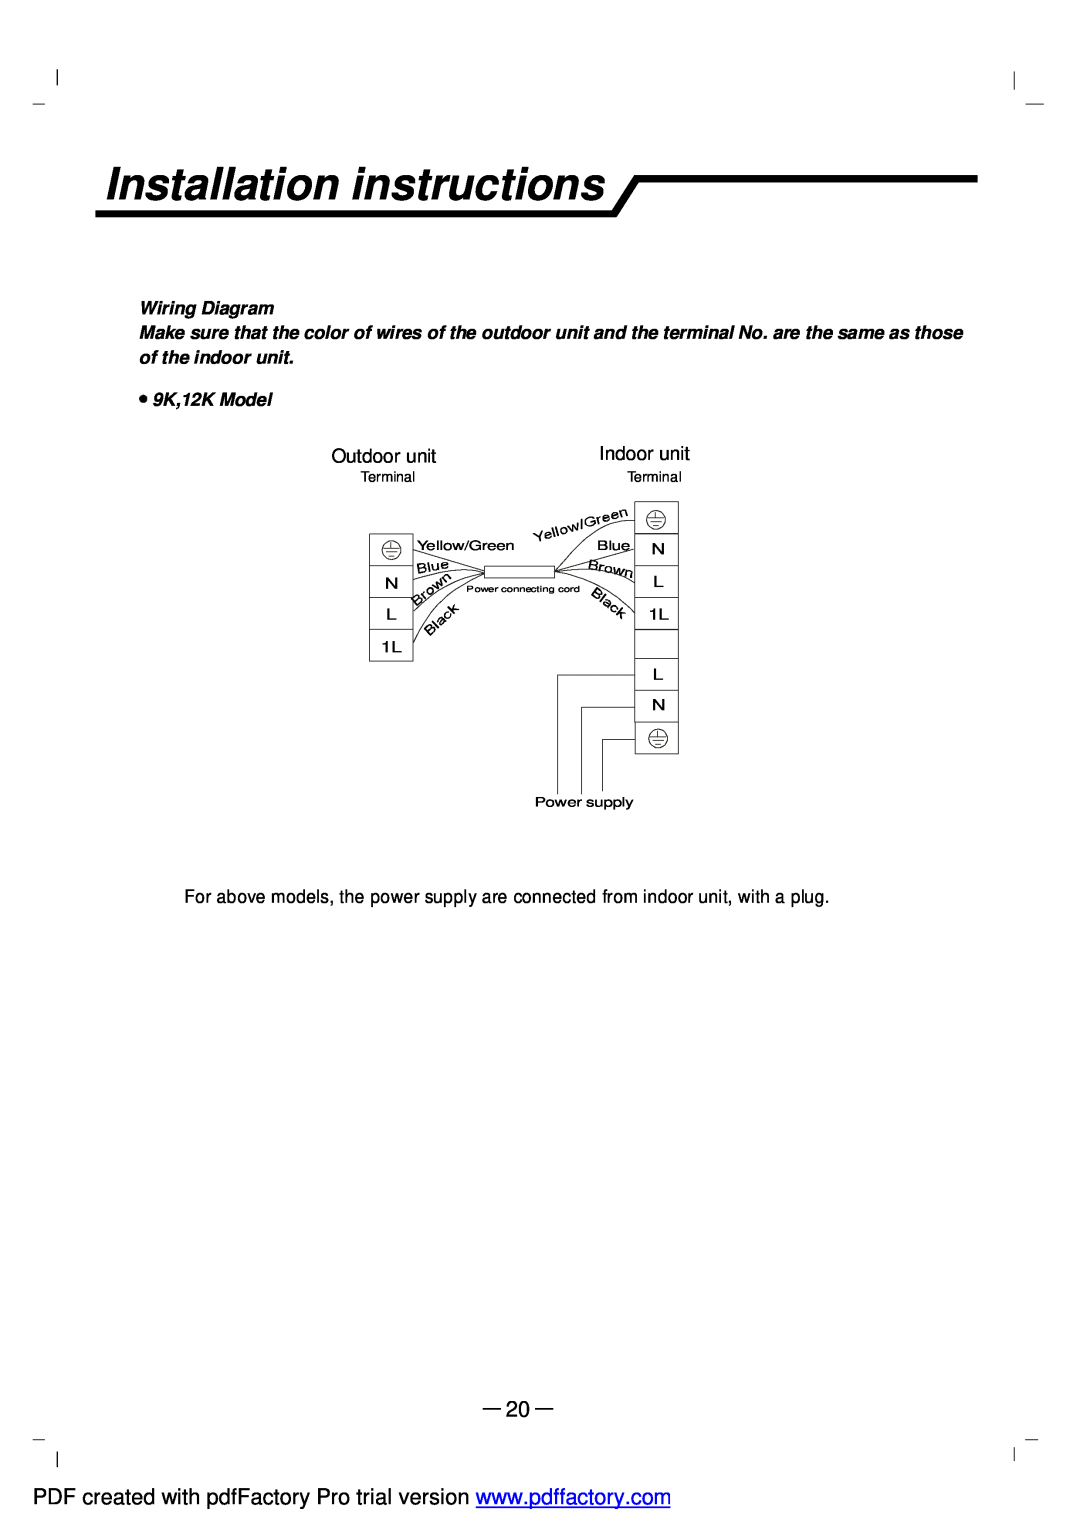 NEC RIH-3267, RIH-2667 user manual Installation instructions, Outdoor unit, Indoor unit, Wiring Diagram, 9K,12K Model 